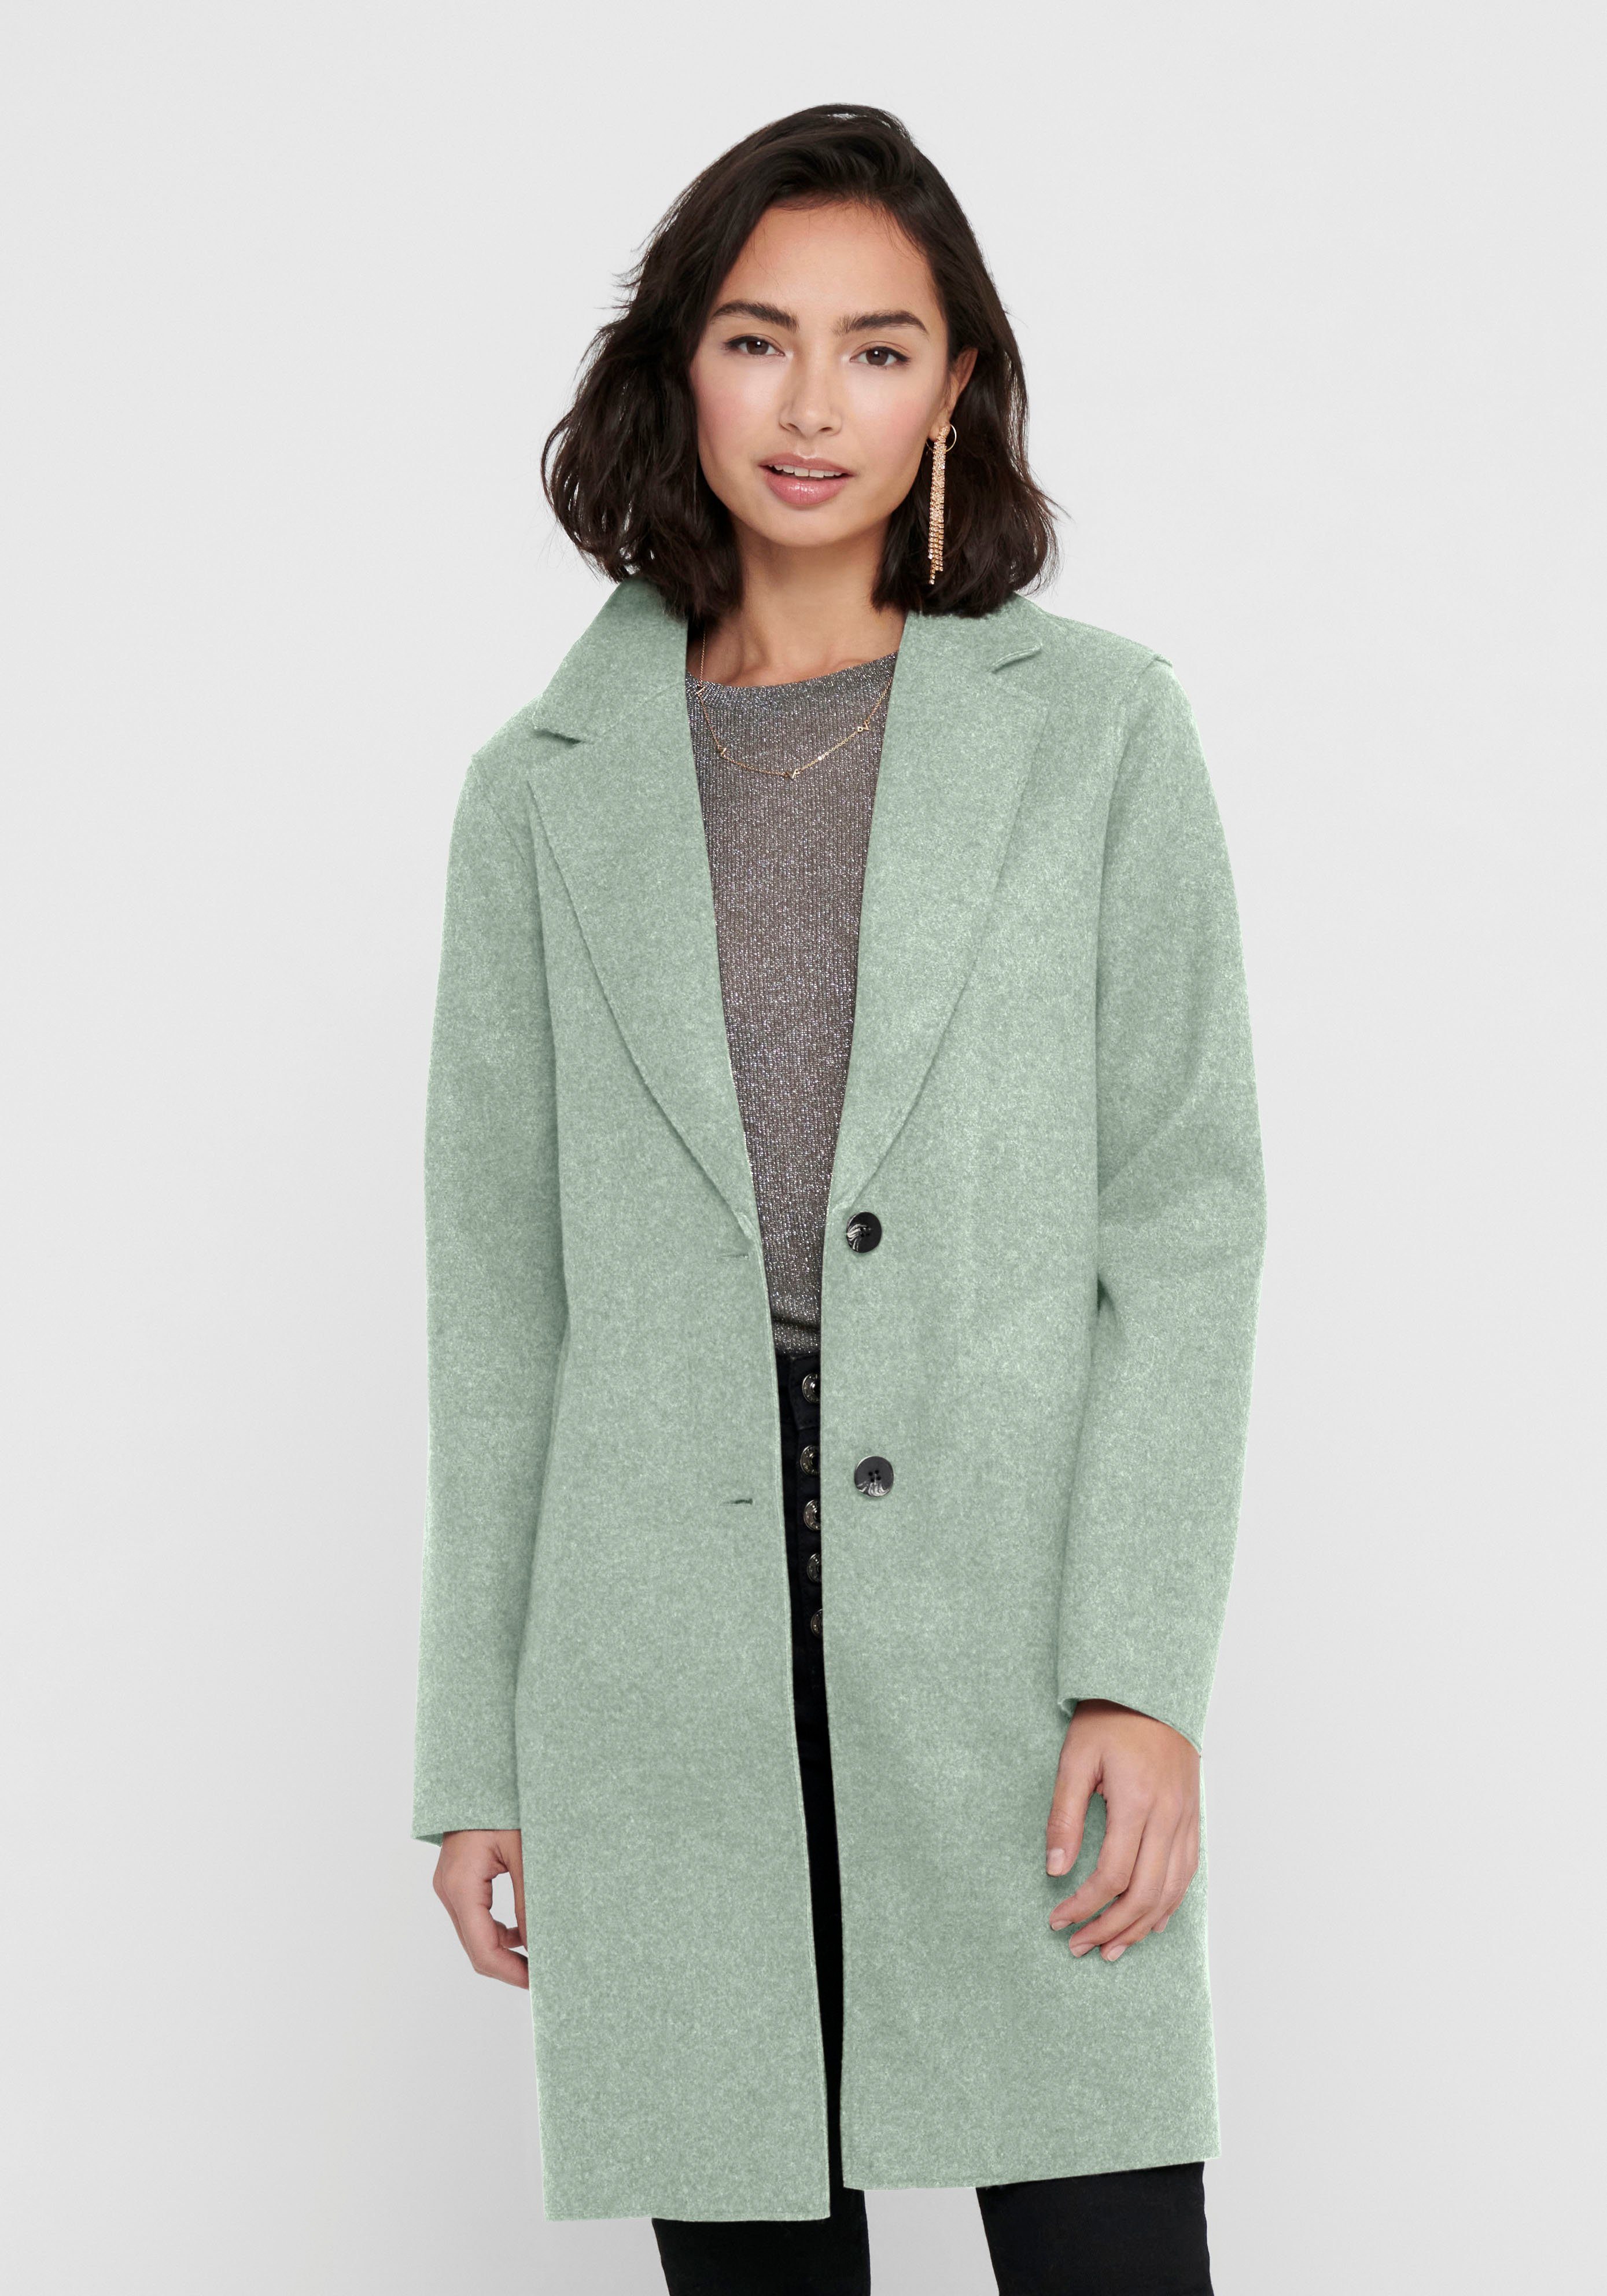 Mantel in grün online kaufen | OTTO